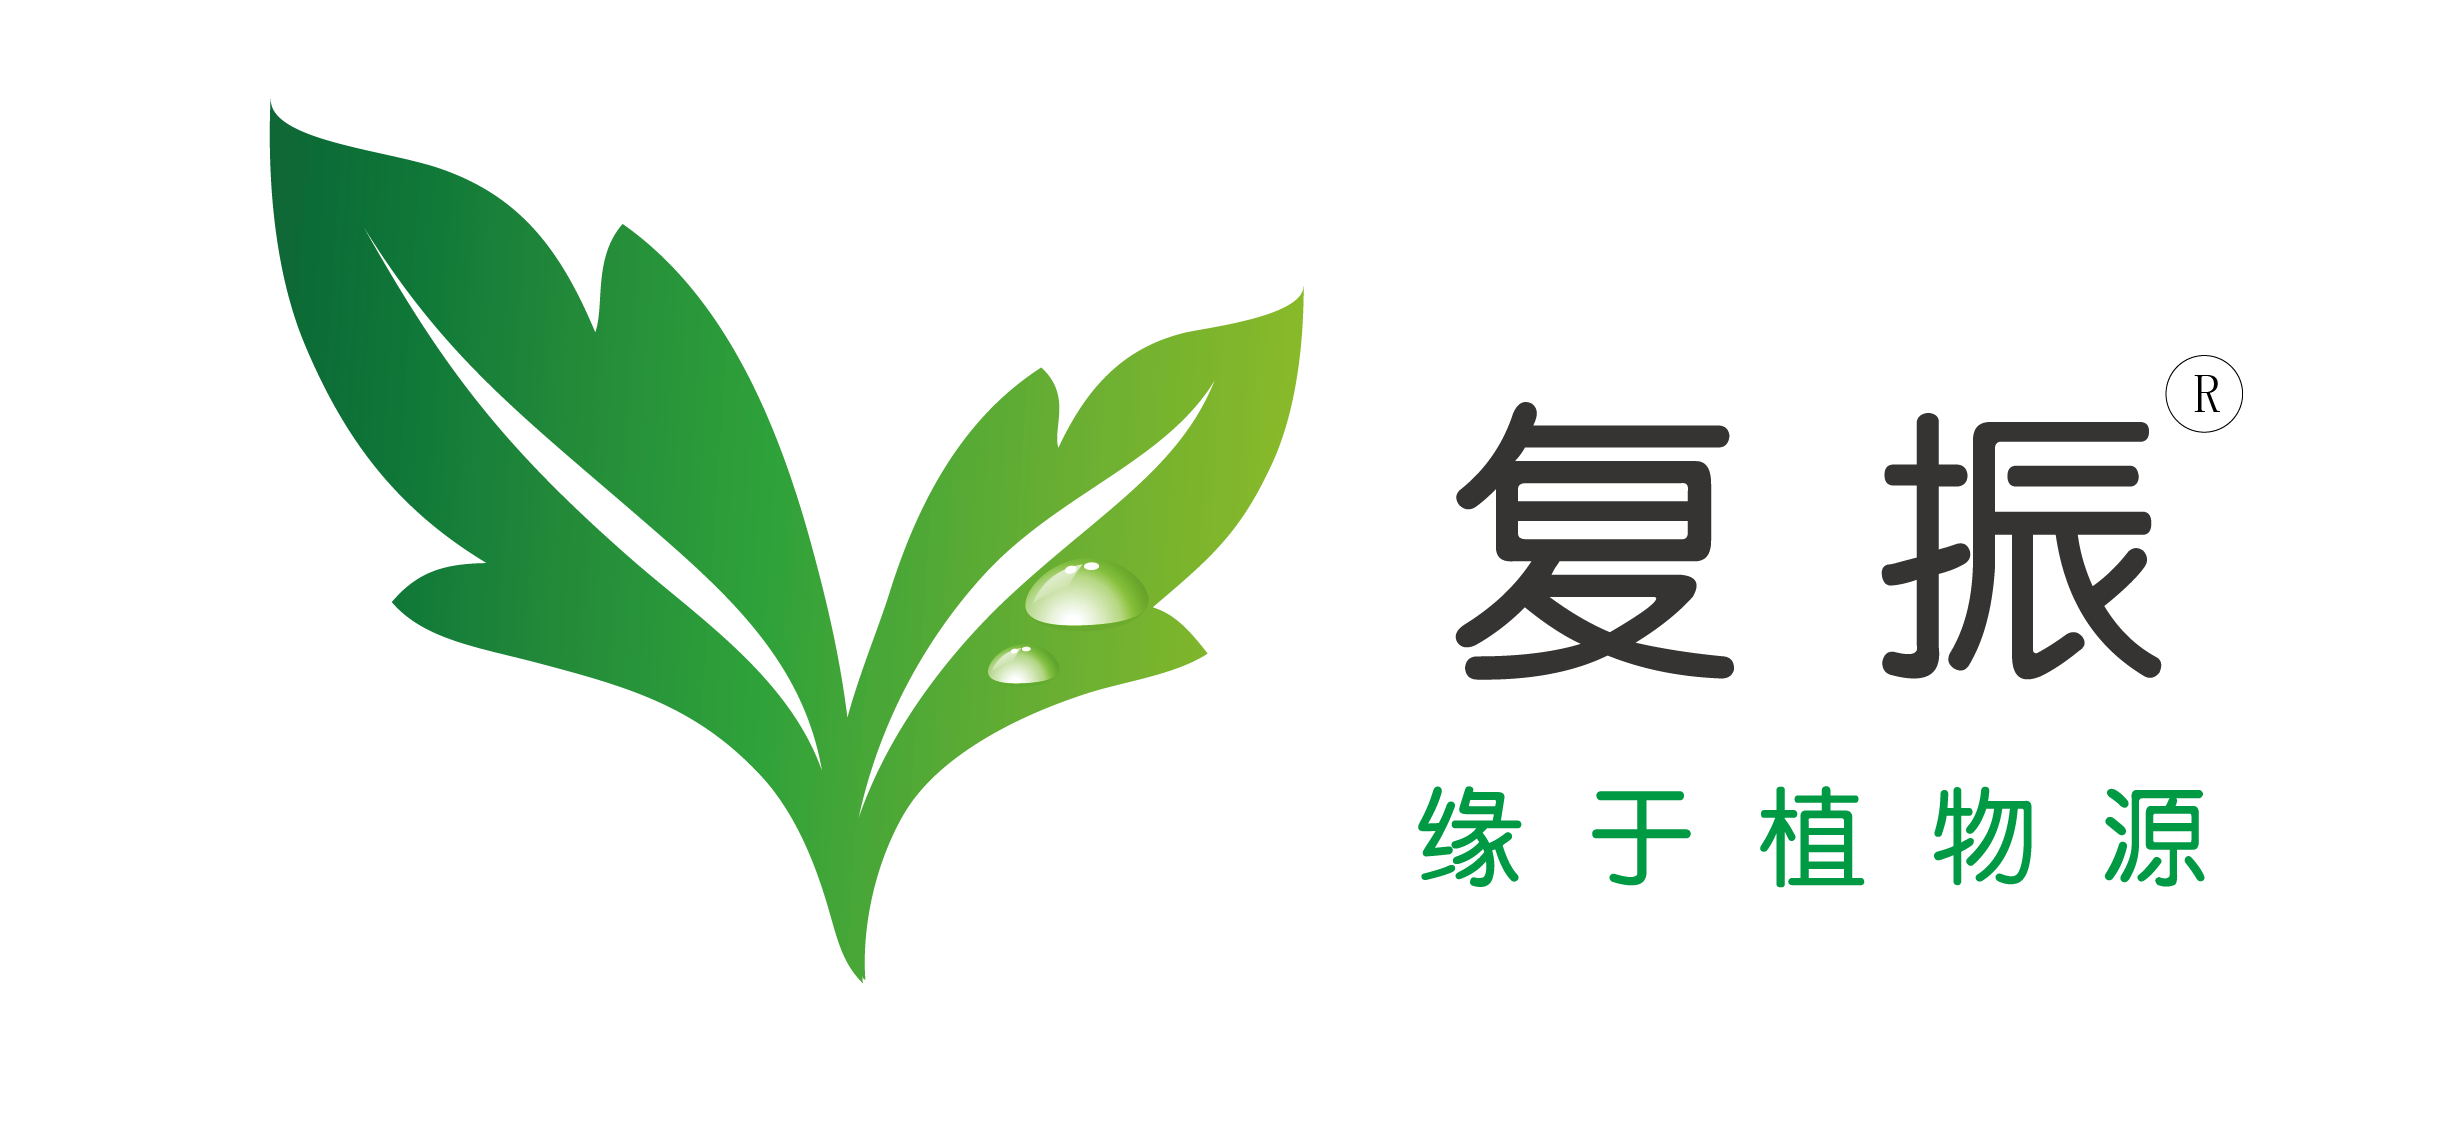 复振logo.png